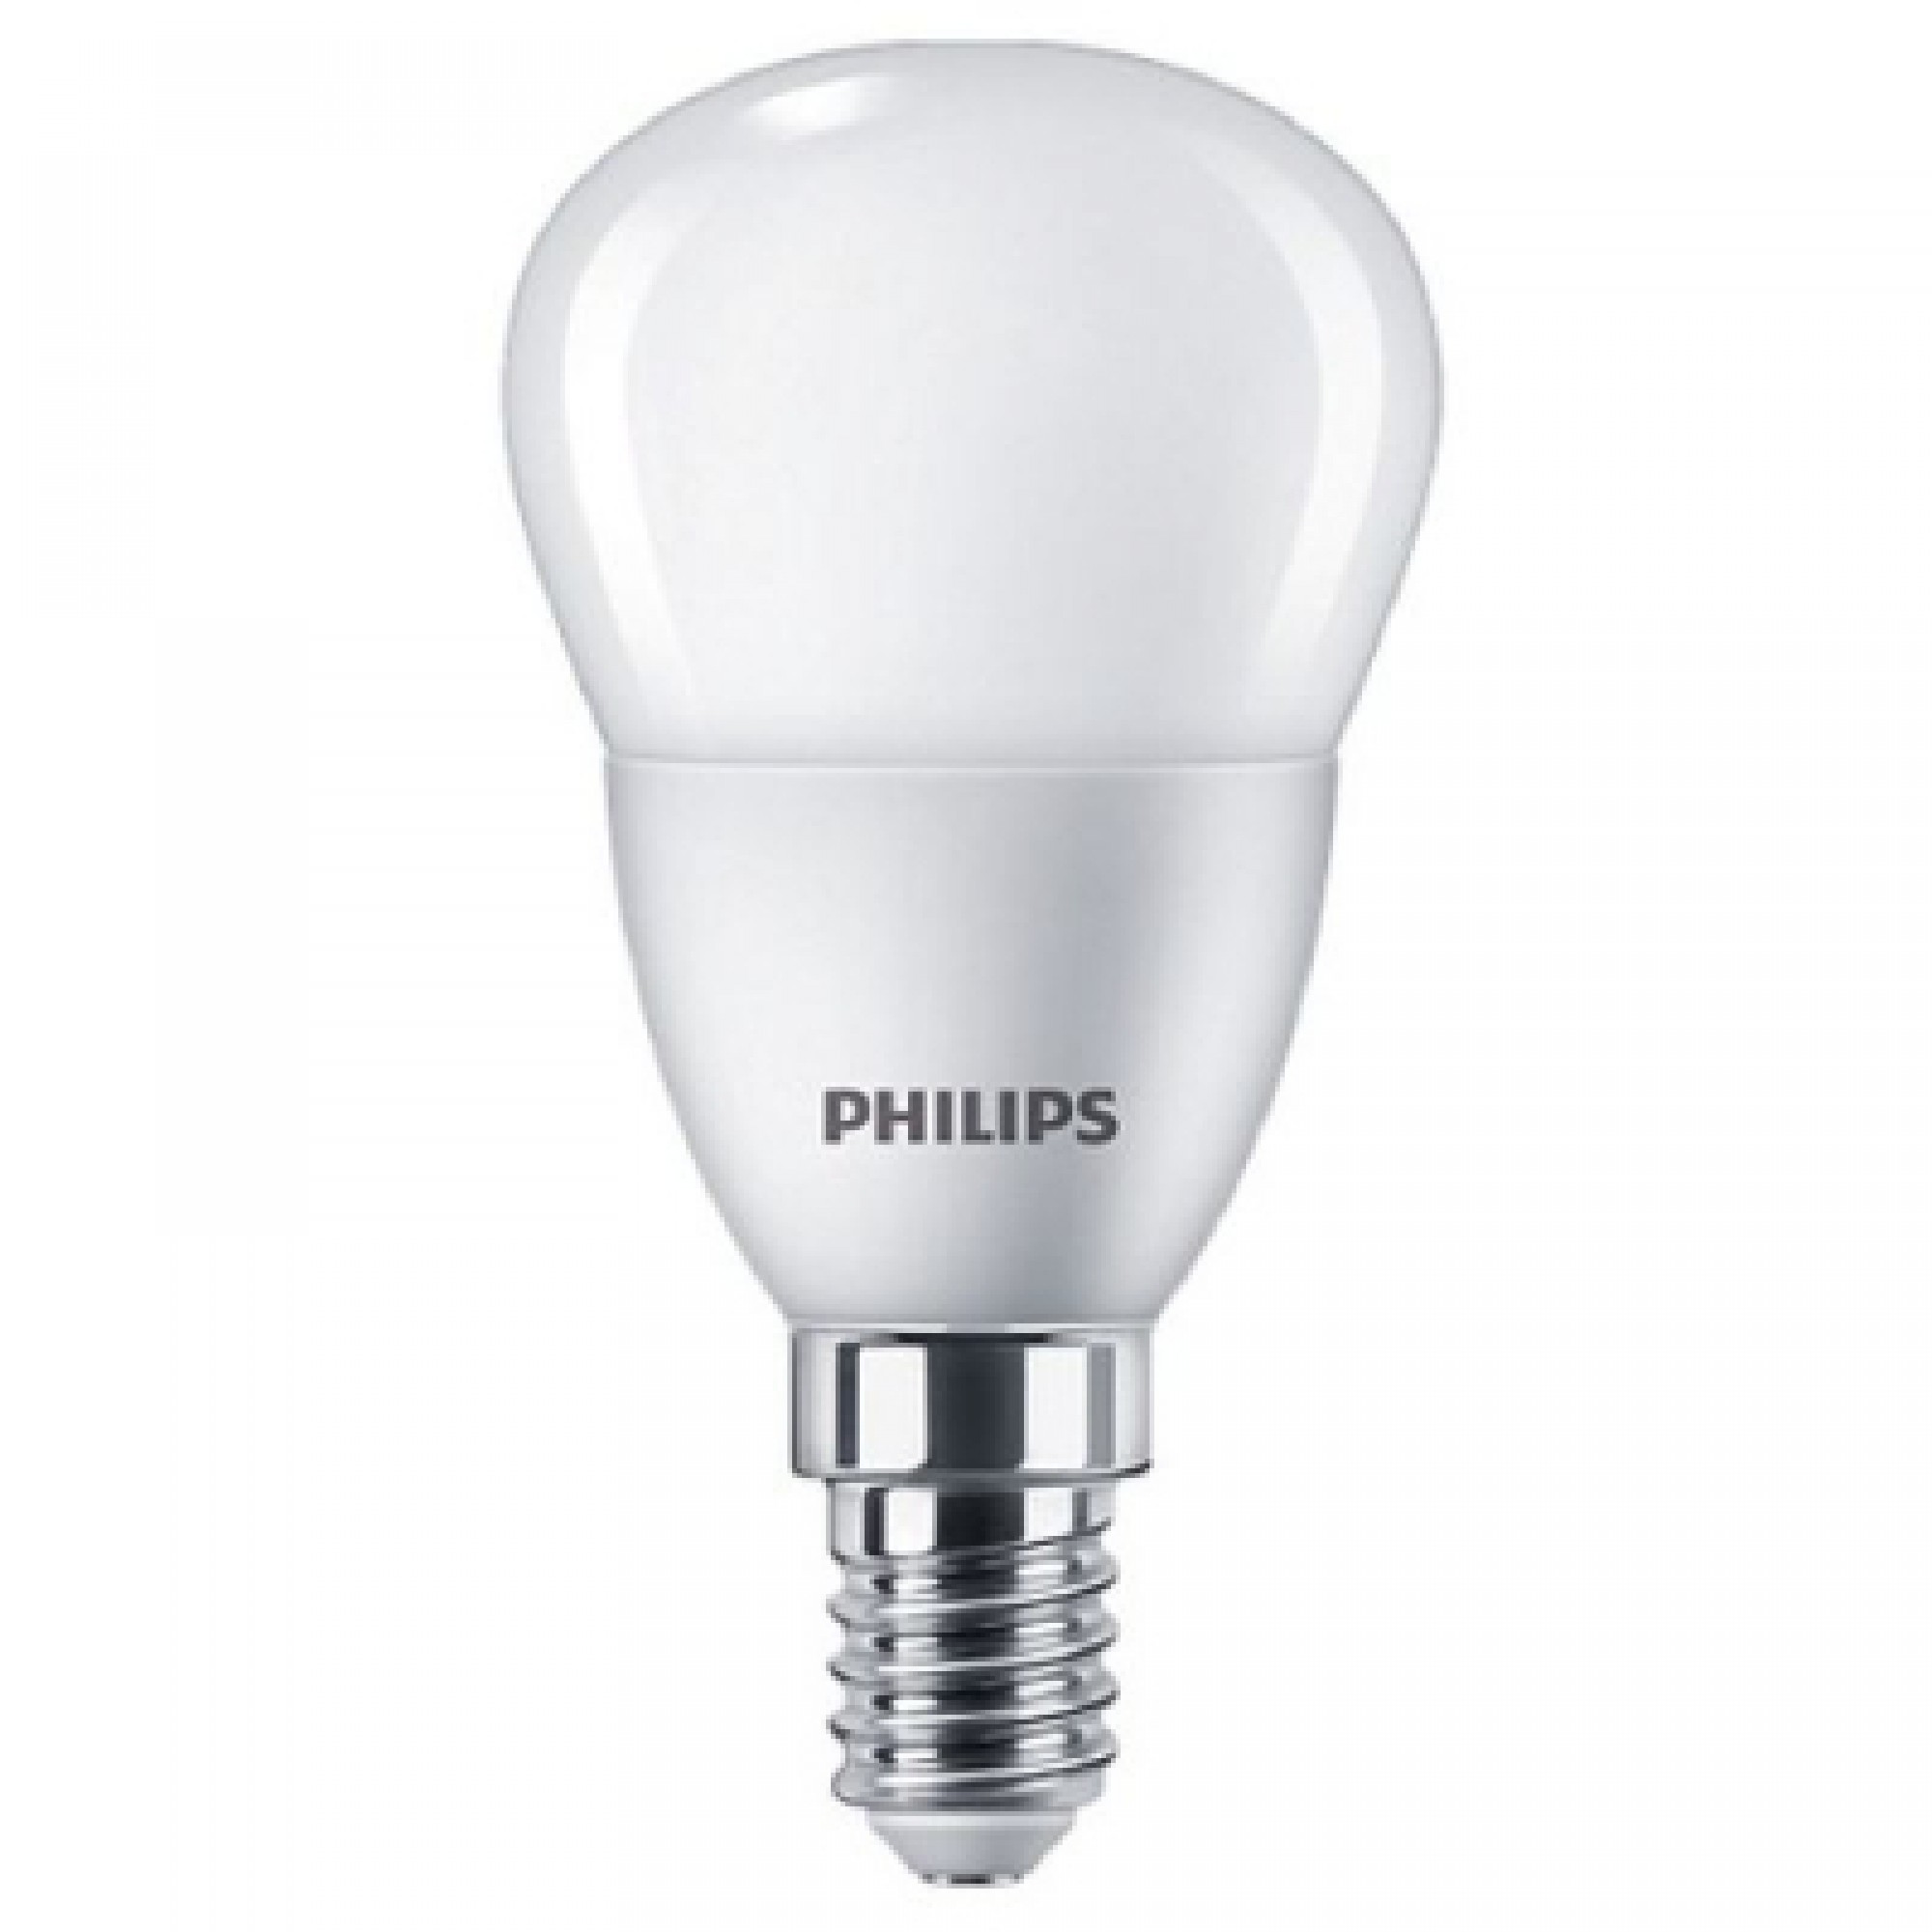 Лампочка Philips ESSLEDLustre 5W 470lm E14 840 P45NDFRRCA (929002970007)